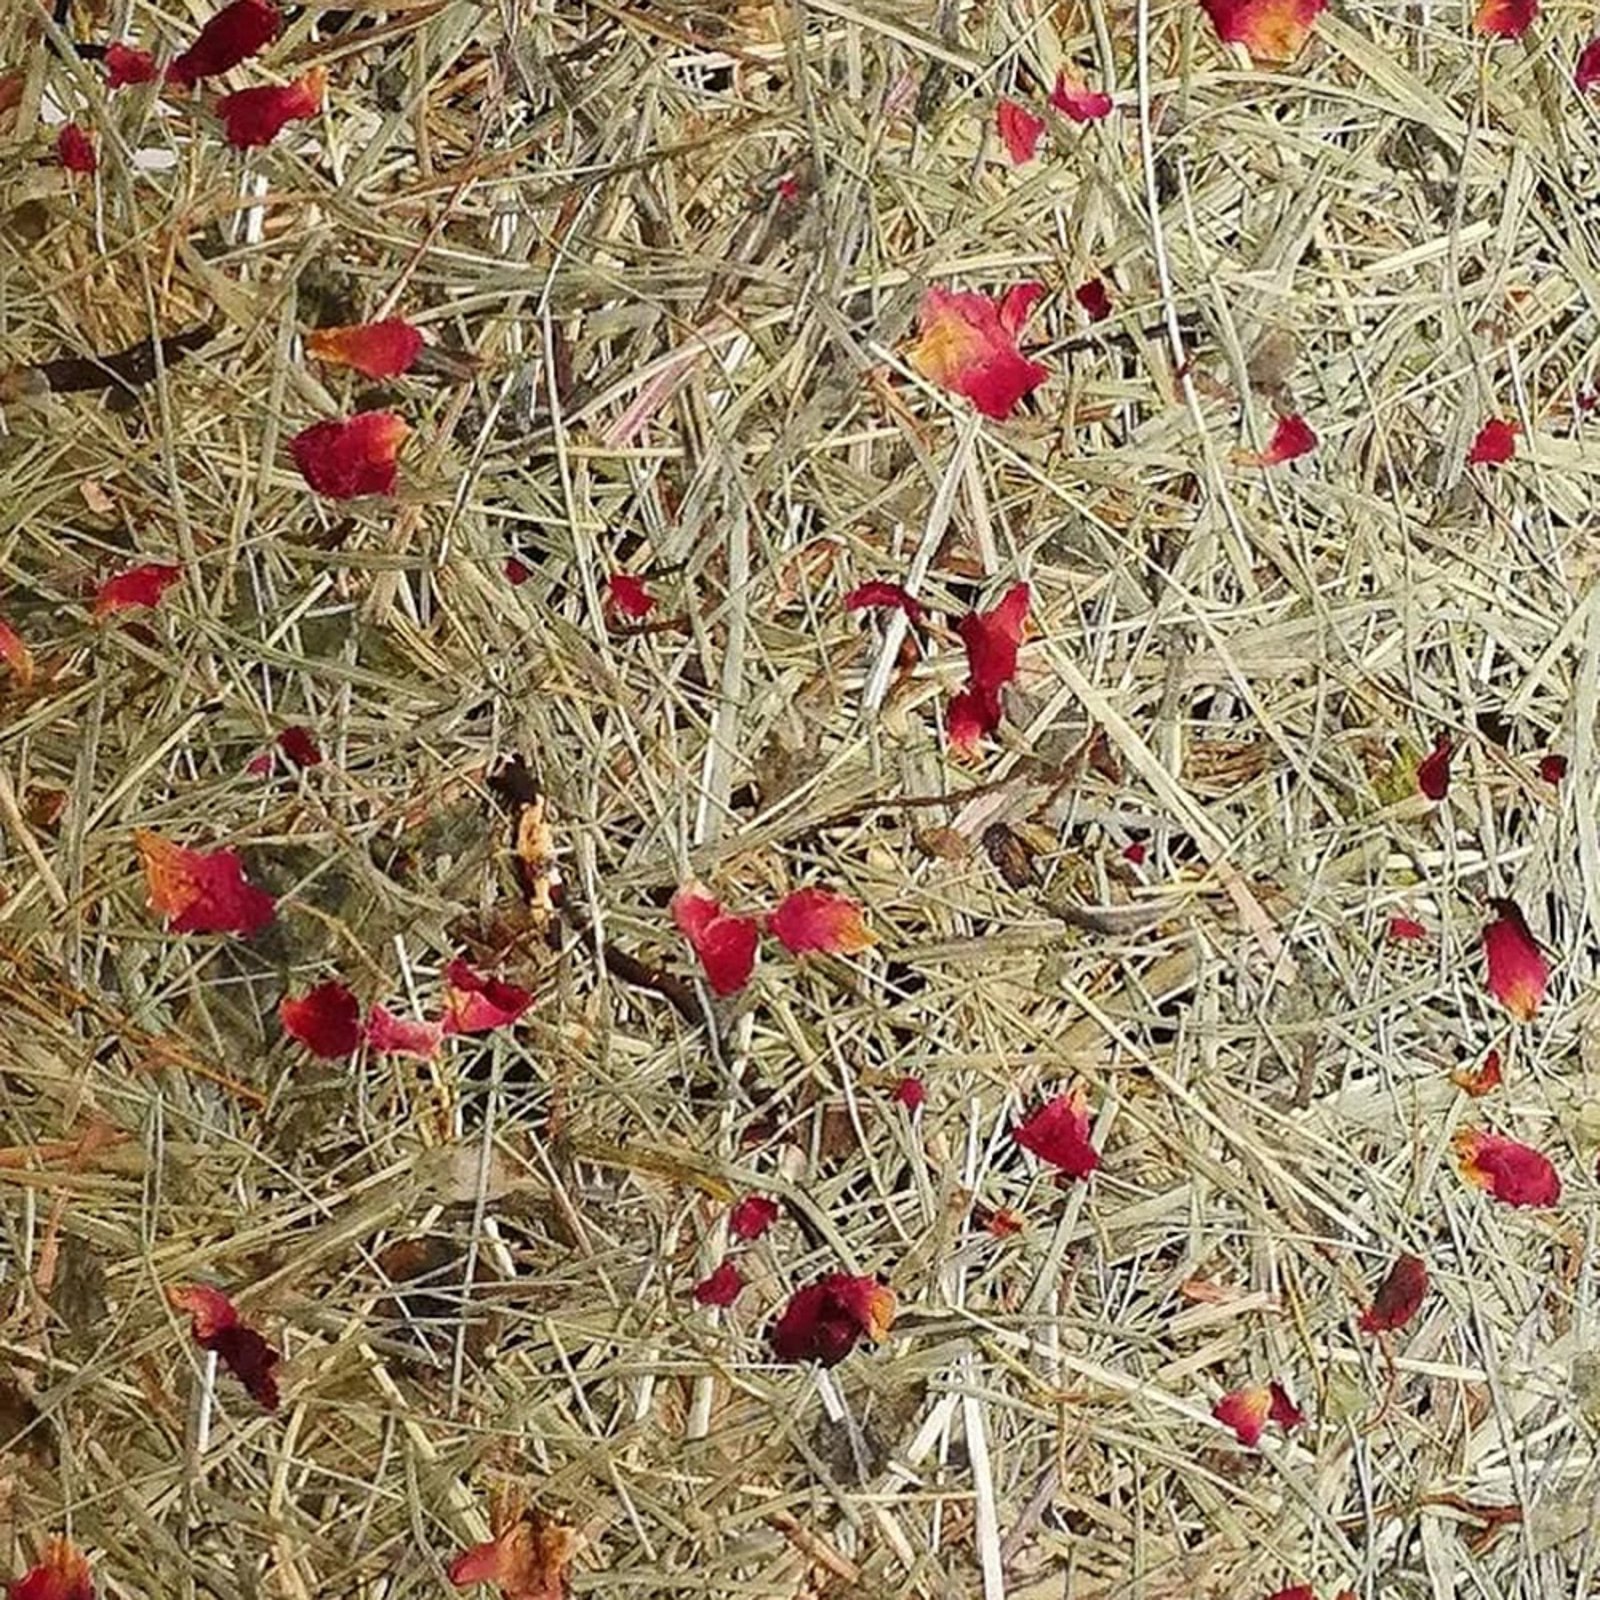 ALMUT 2610 taklampe Ø 25 cm høy /røde roseblomster